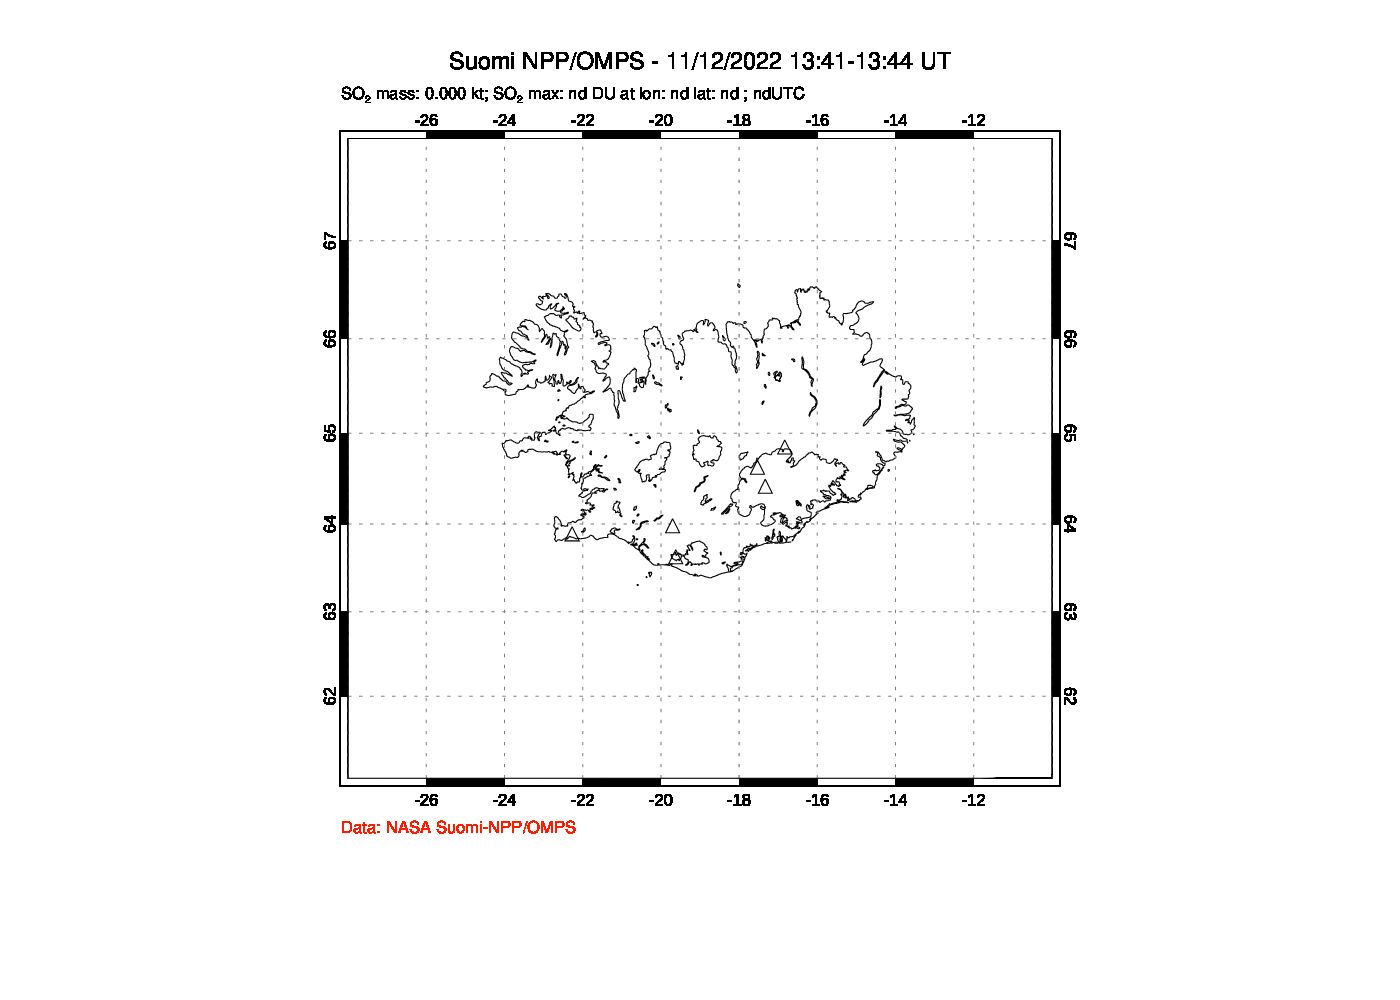 A sulfur dioxide image over Iceland on Nov 12, 2022.